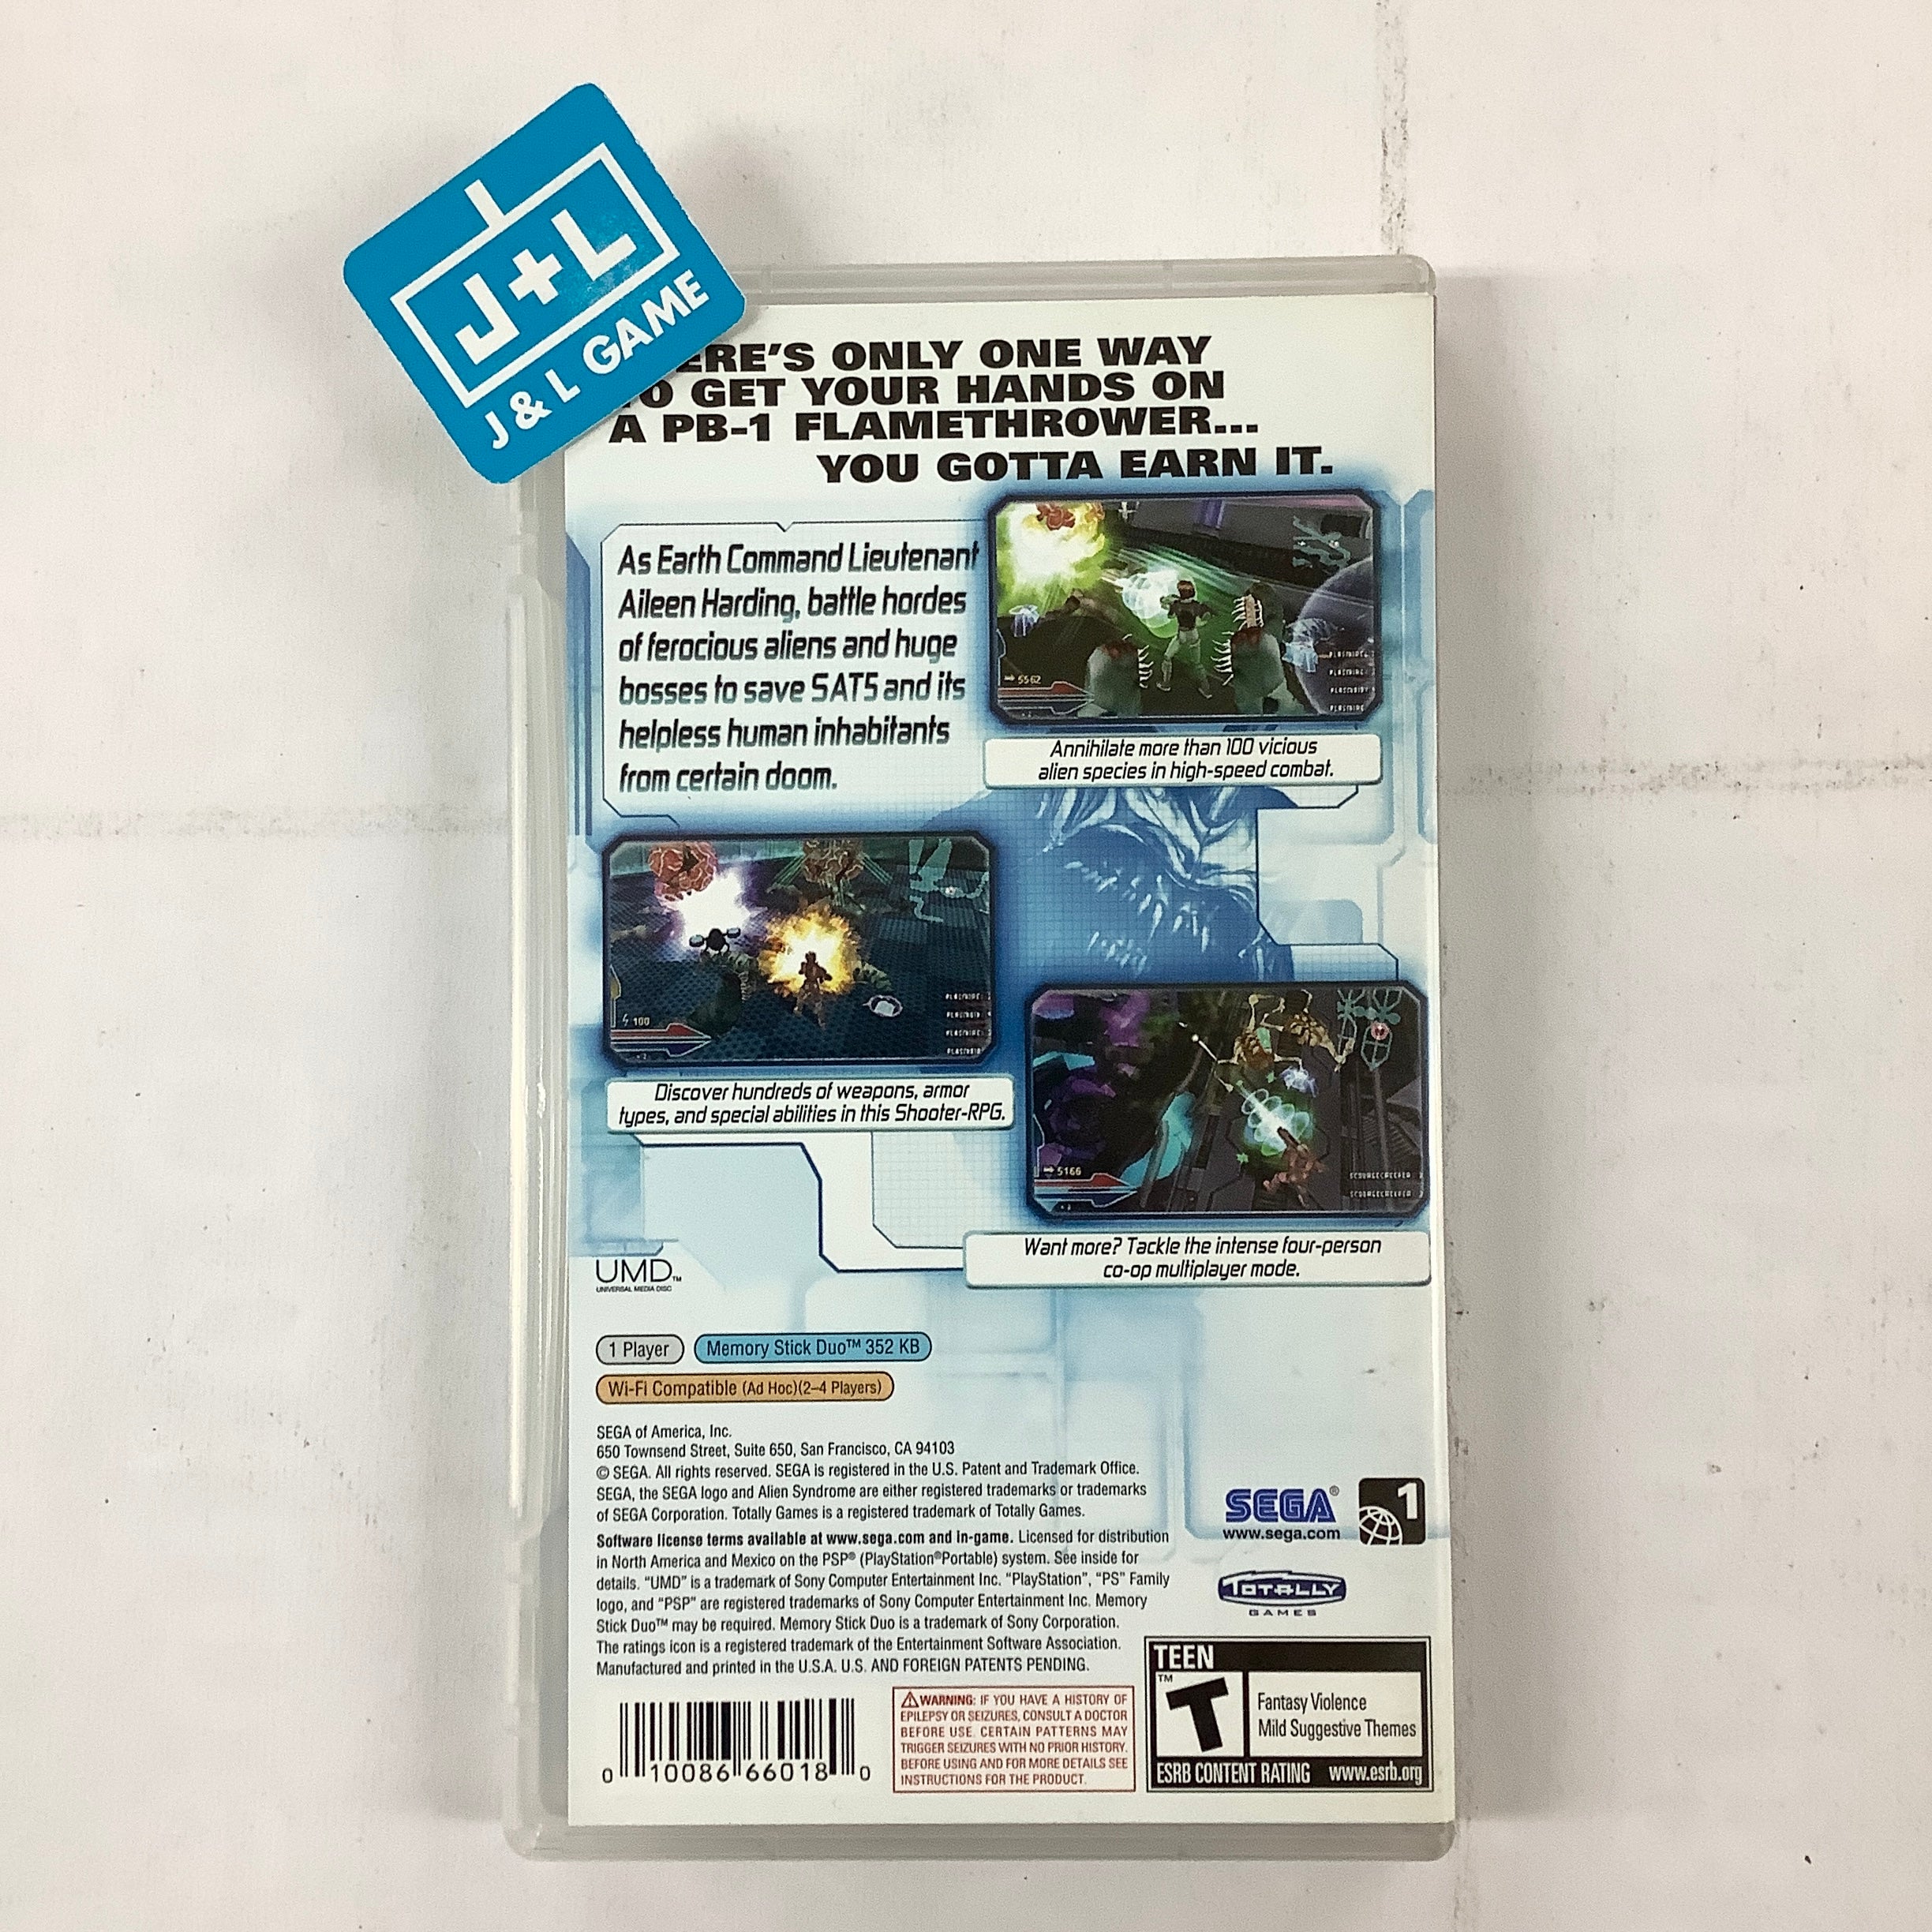 Alien Syndrome - Sony PSP [Pre-Owned] Video Games Sega   